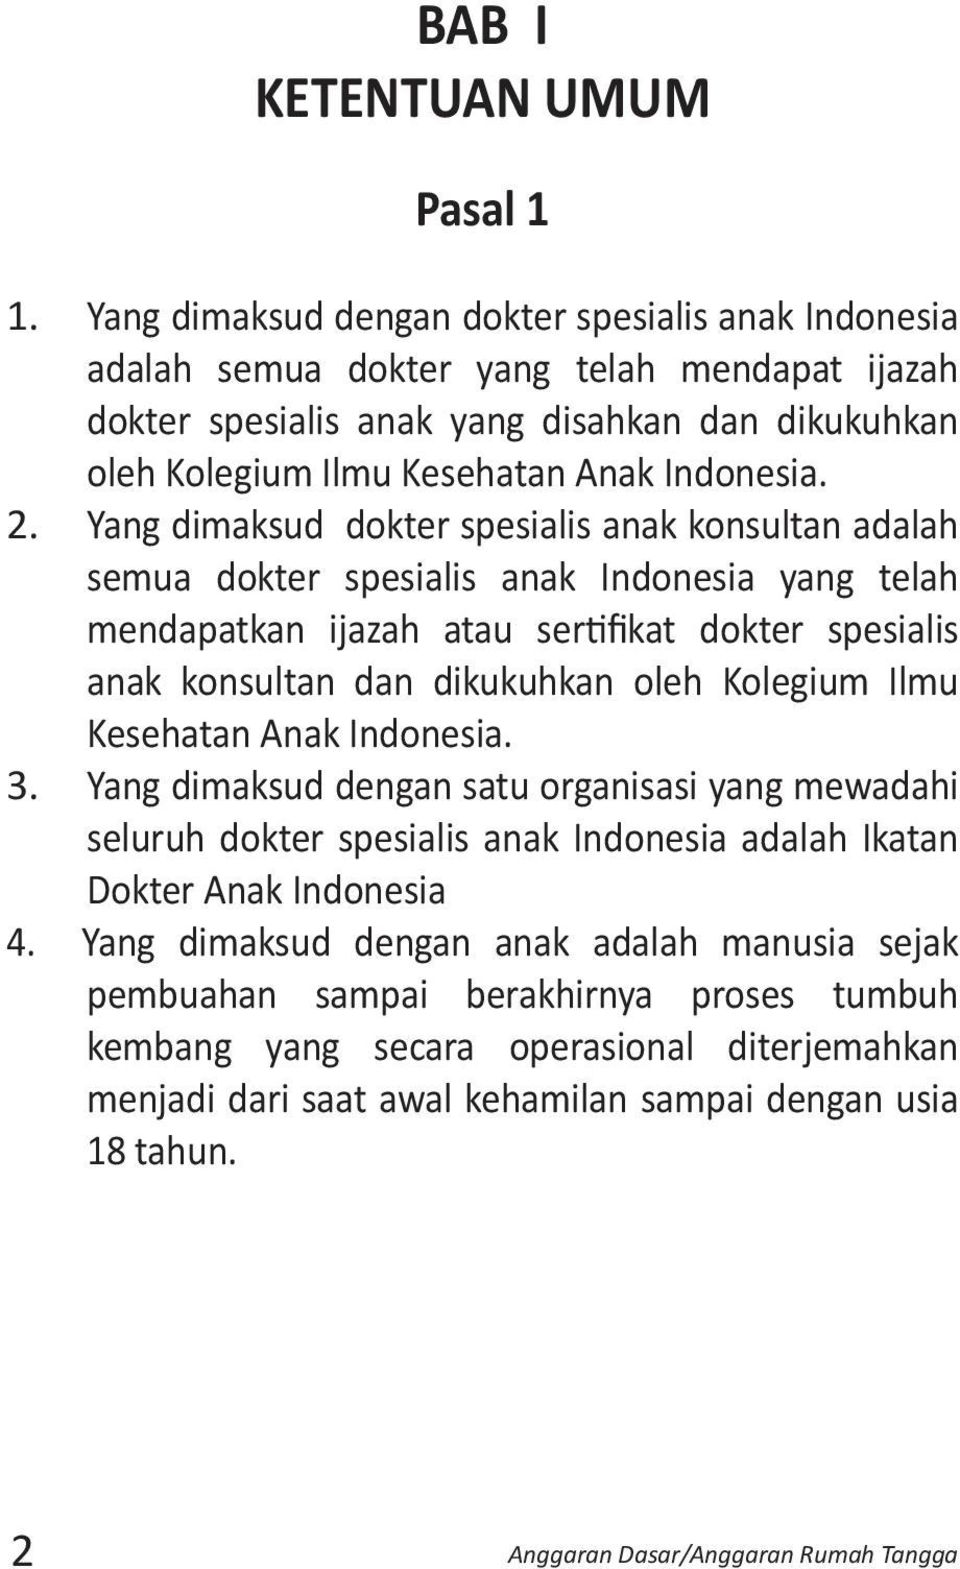 Yang dimaksud dokter spesialis anak konsultan adalah semua dokter spesialis anak Indonesia yang telah mendapatkan ijazah atau sertifikat dokter spesialis anak konsultan dan dikukuhkan oleh Kolegium